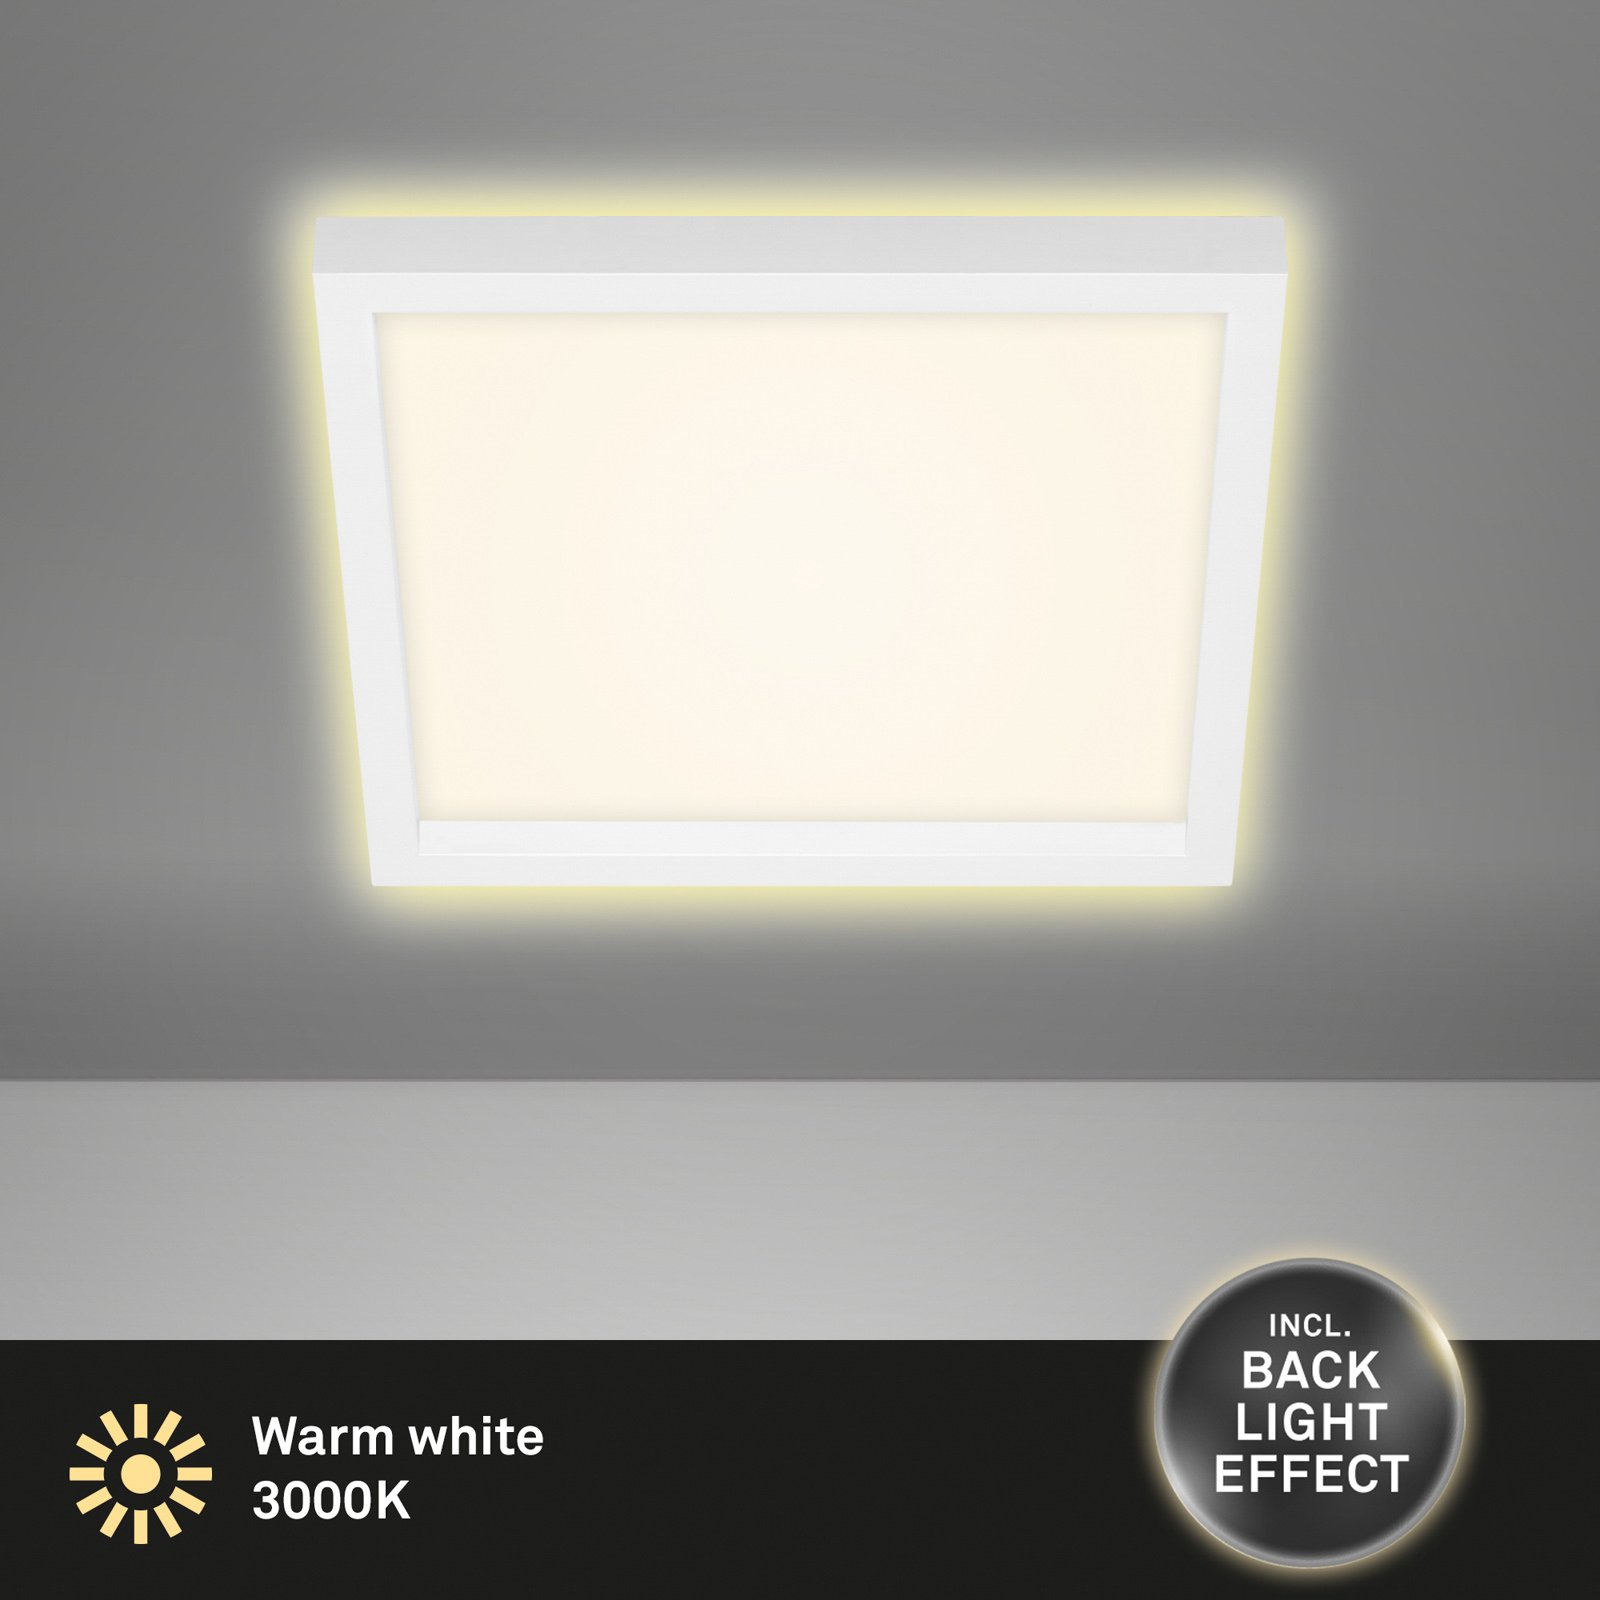 Stropna svetilka LED 7362, 29 x 29 cm, bela